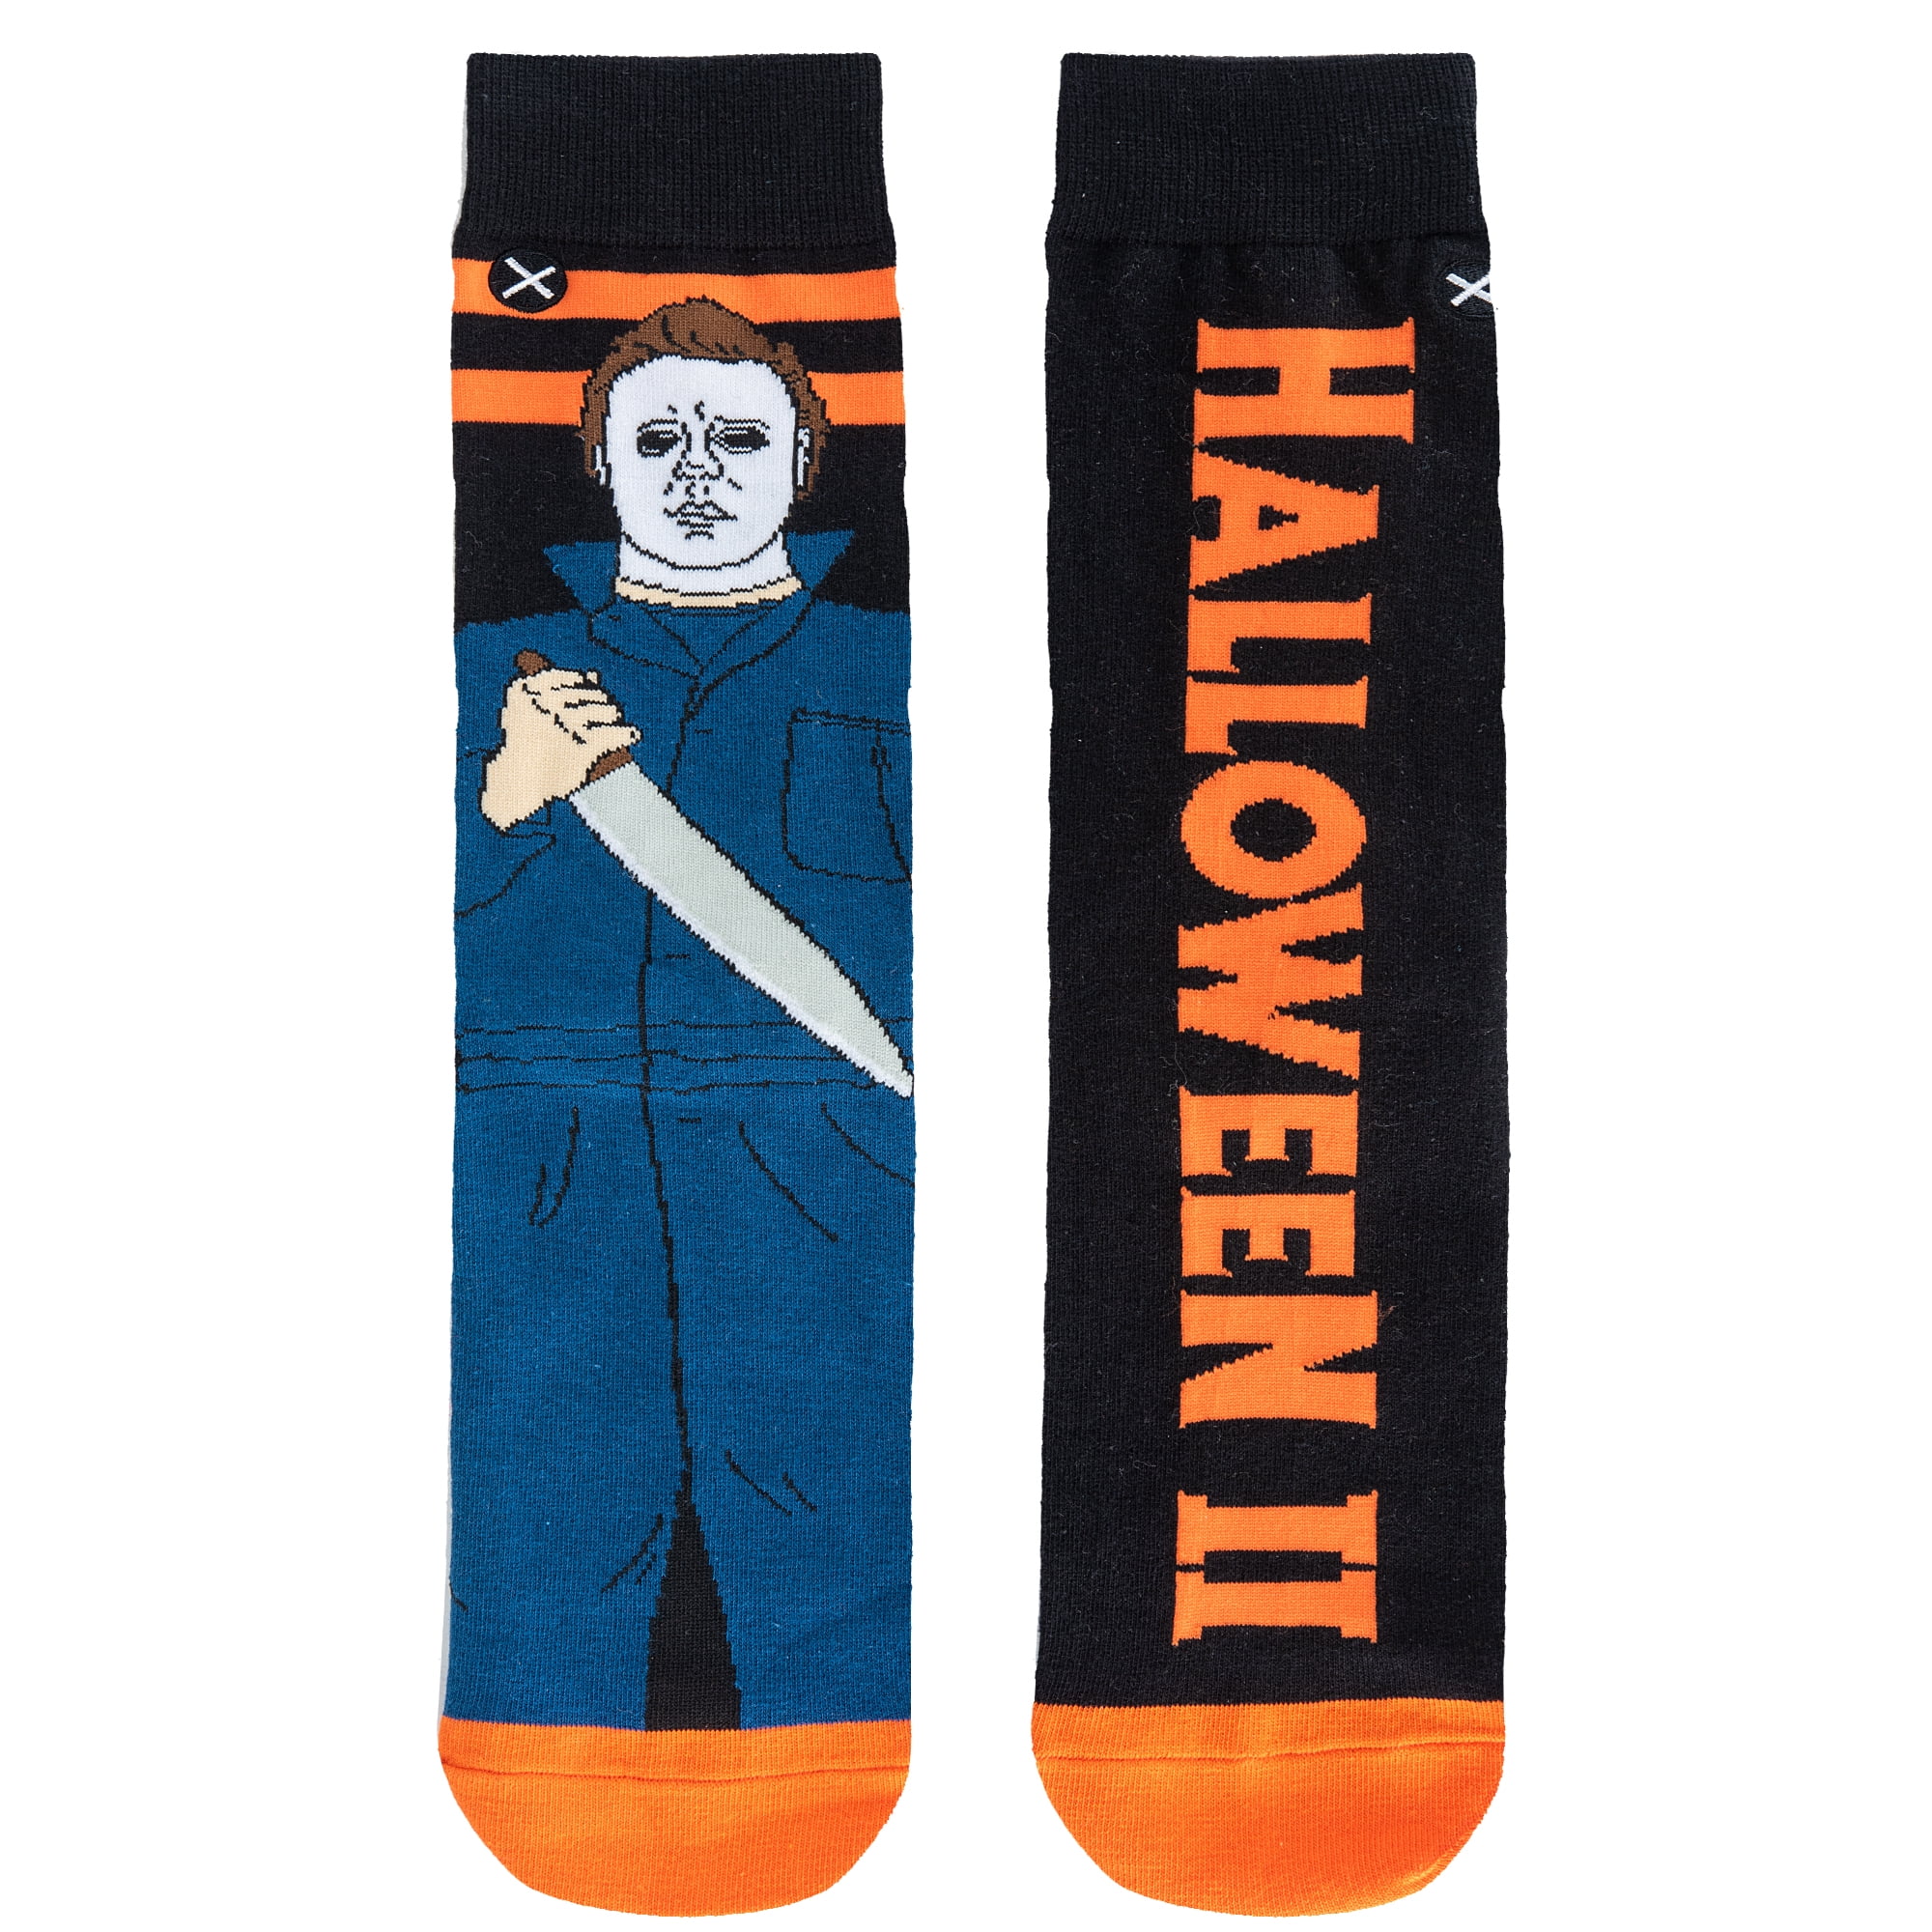 Odd Sox, Chucky Doll Child's Play, Funny Novelty Crew Socks, Horror Scary  80's - Walmart.com